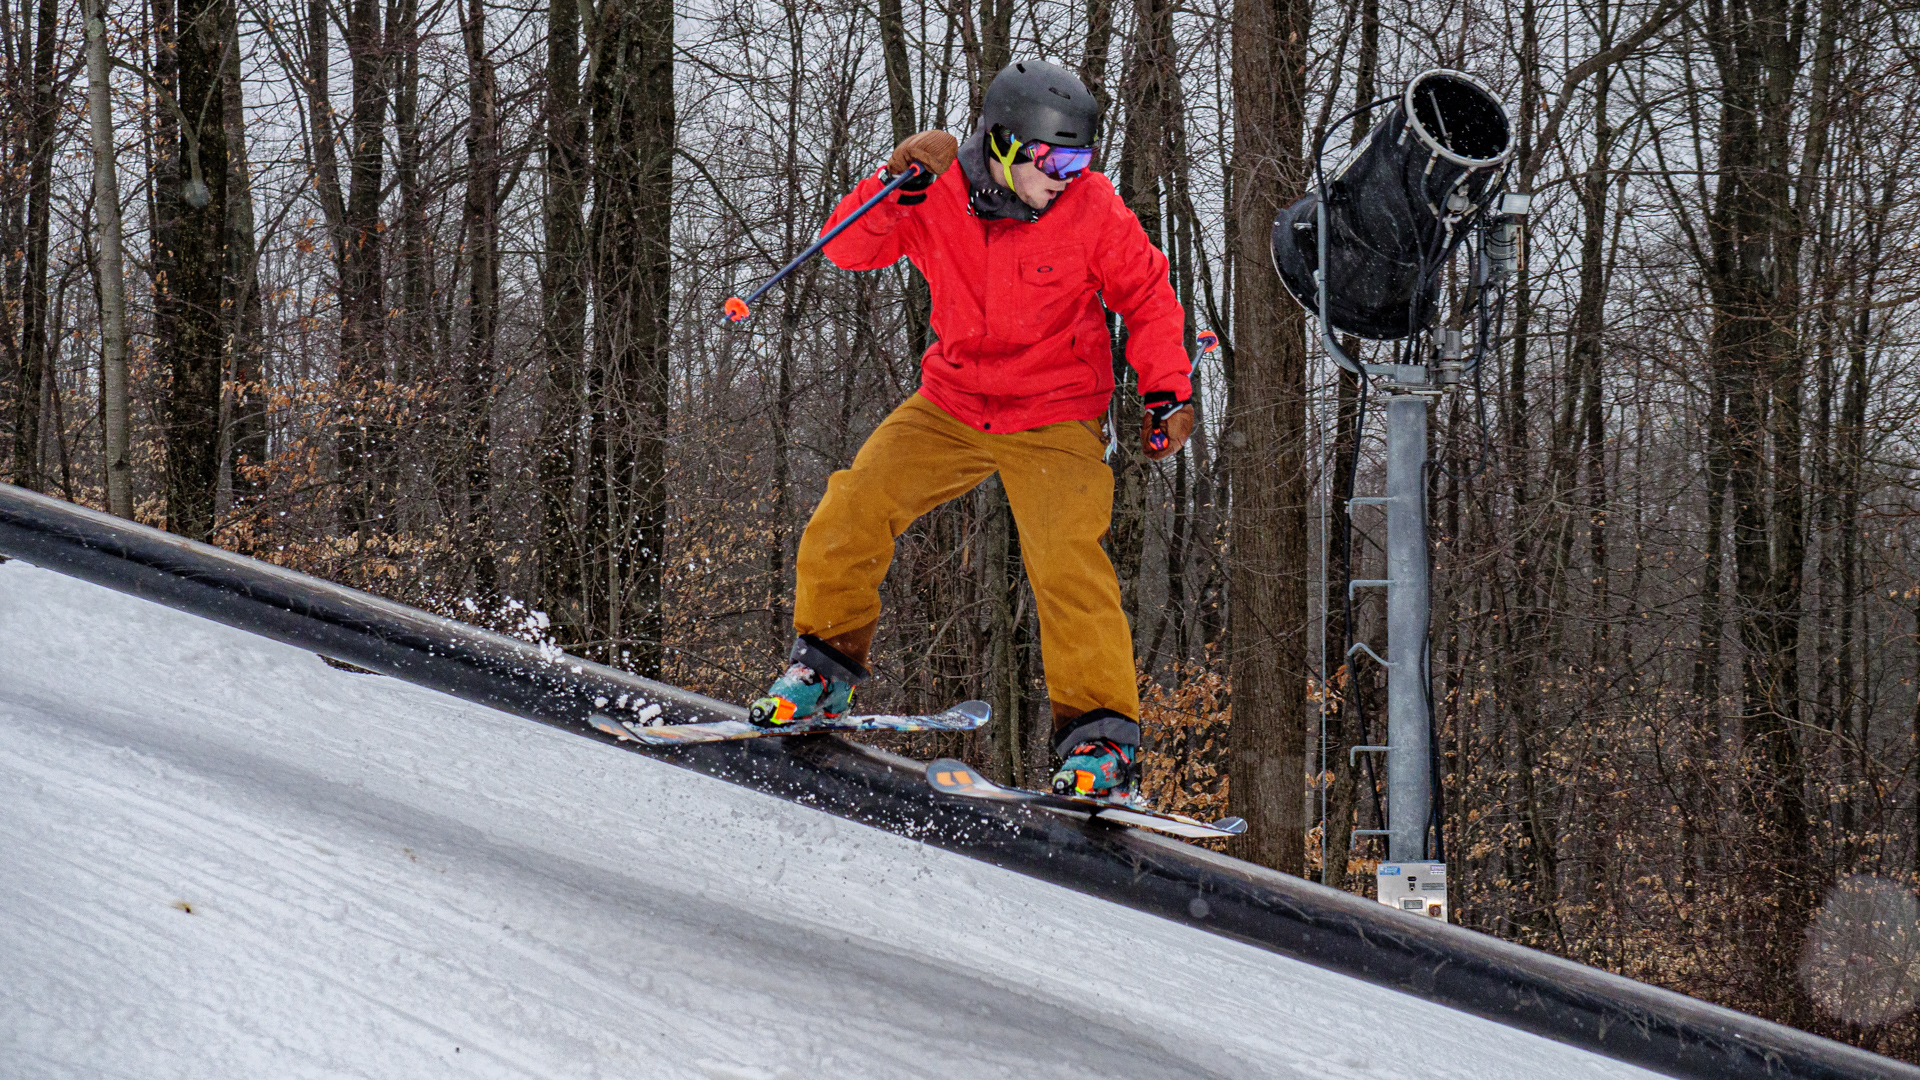 Skier sliding rail in Terrain Park